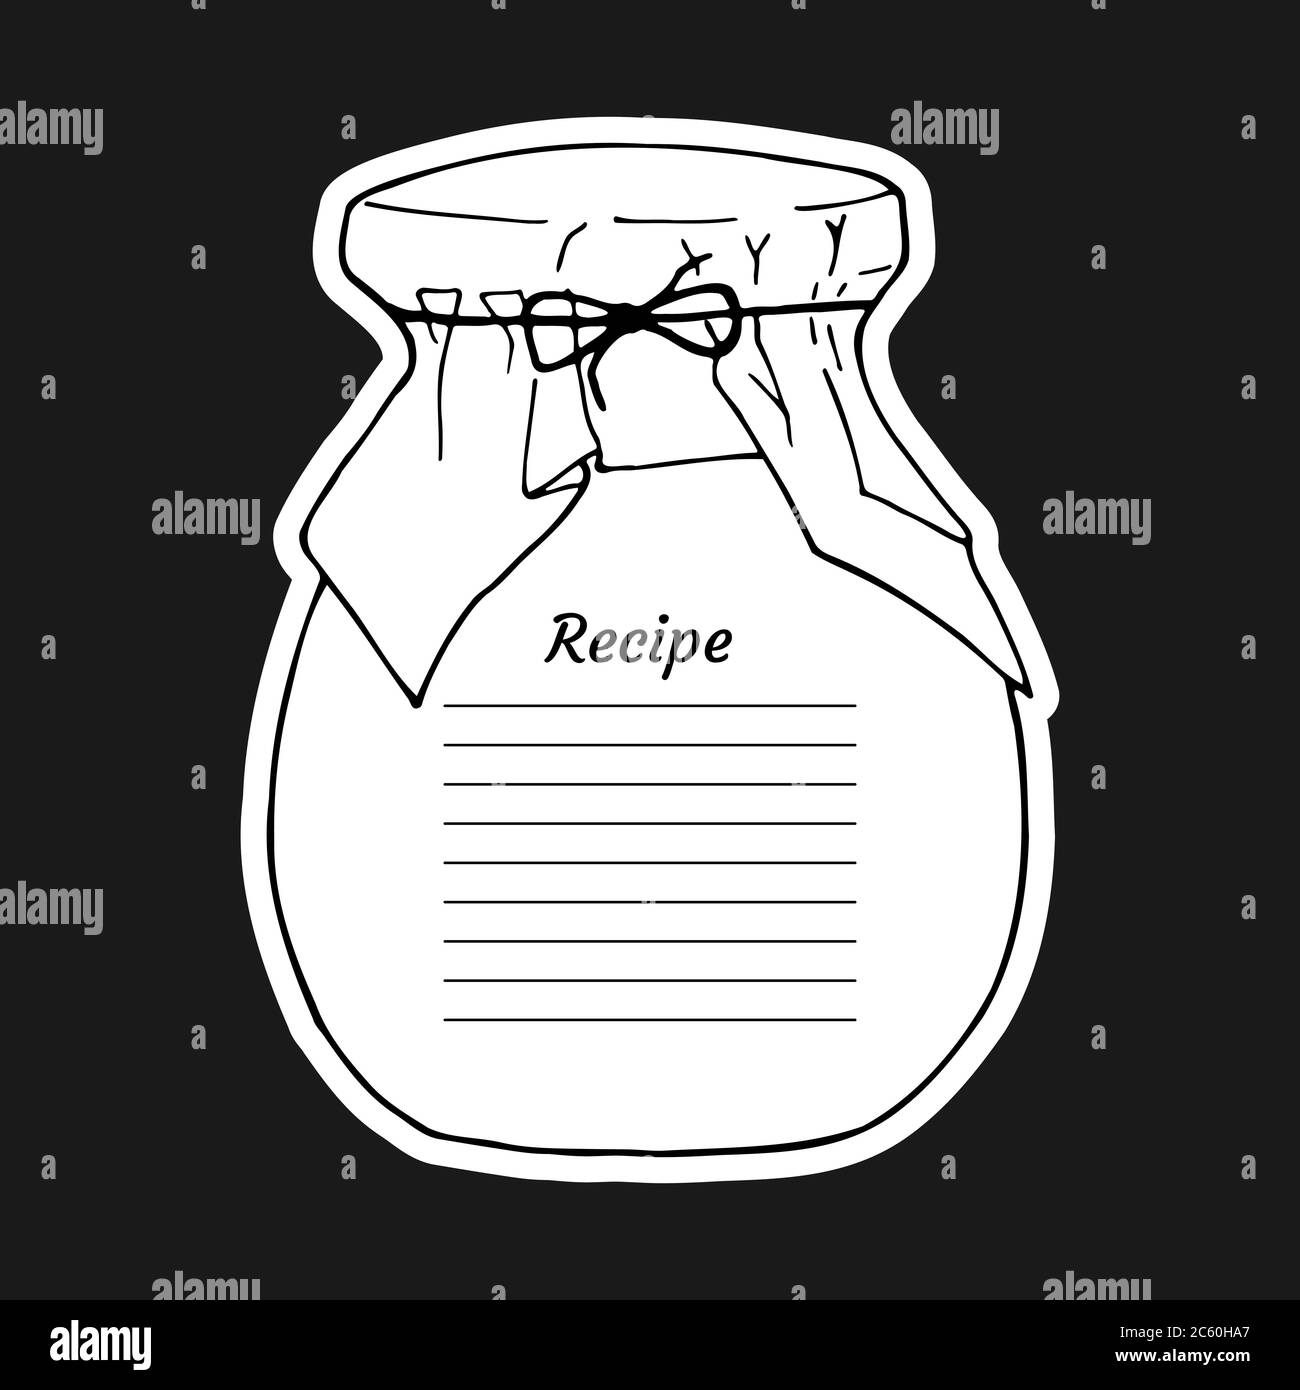 Rezeptkarte mit Text und großem Glas. Zum Aufschreiben eines Rezeptes. Vektorgrafik Design. Kochbuch-Vorlagenseite. Stock Vektor